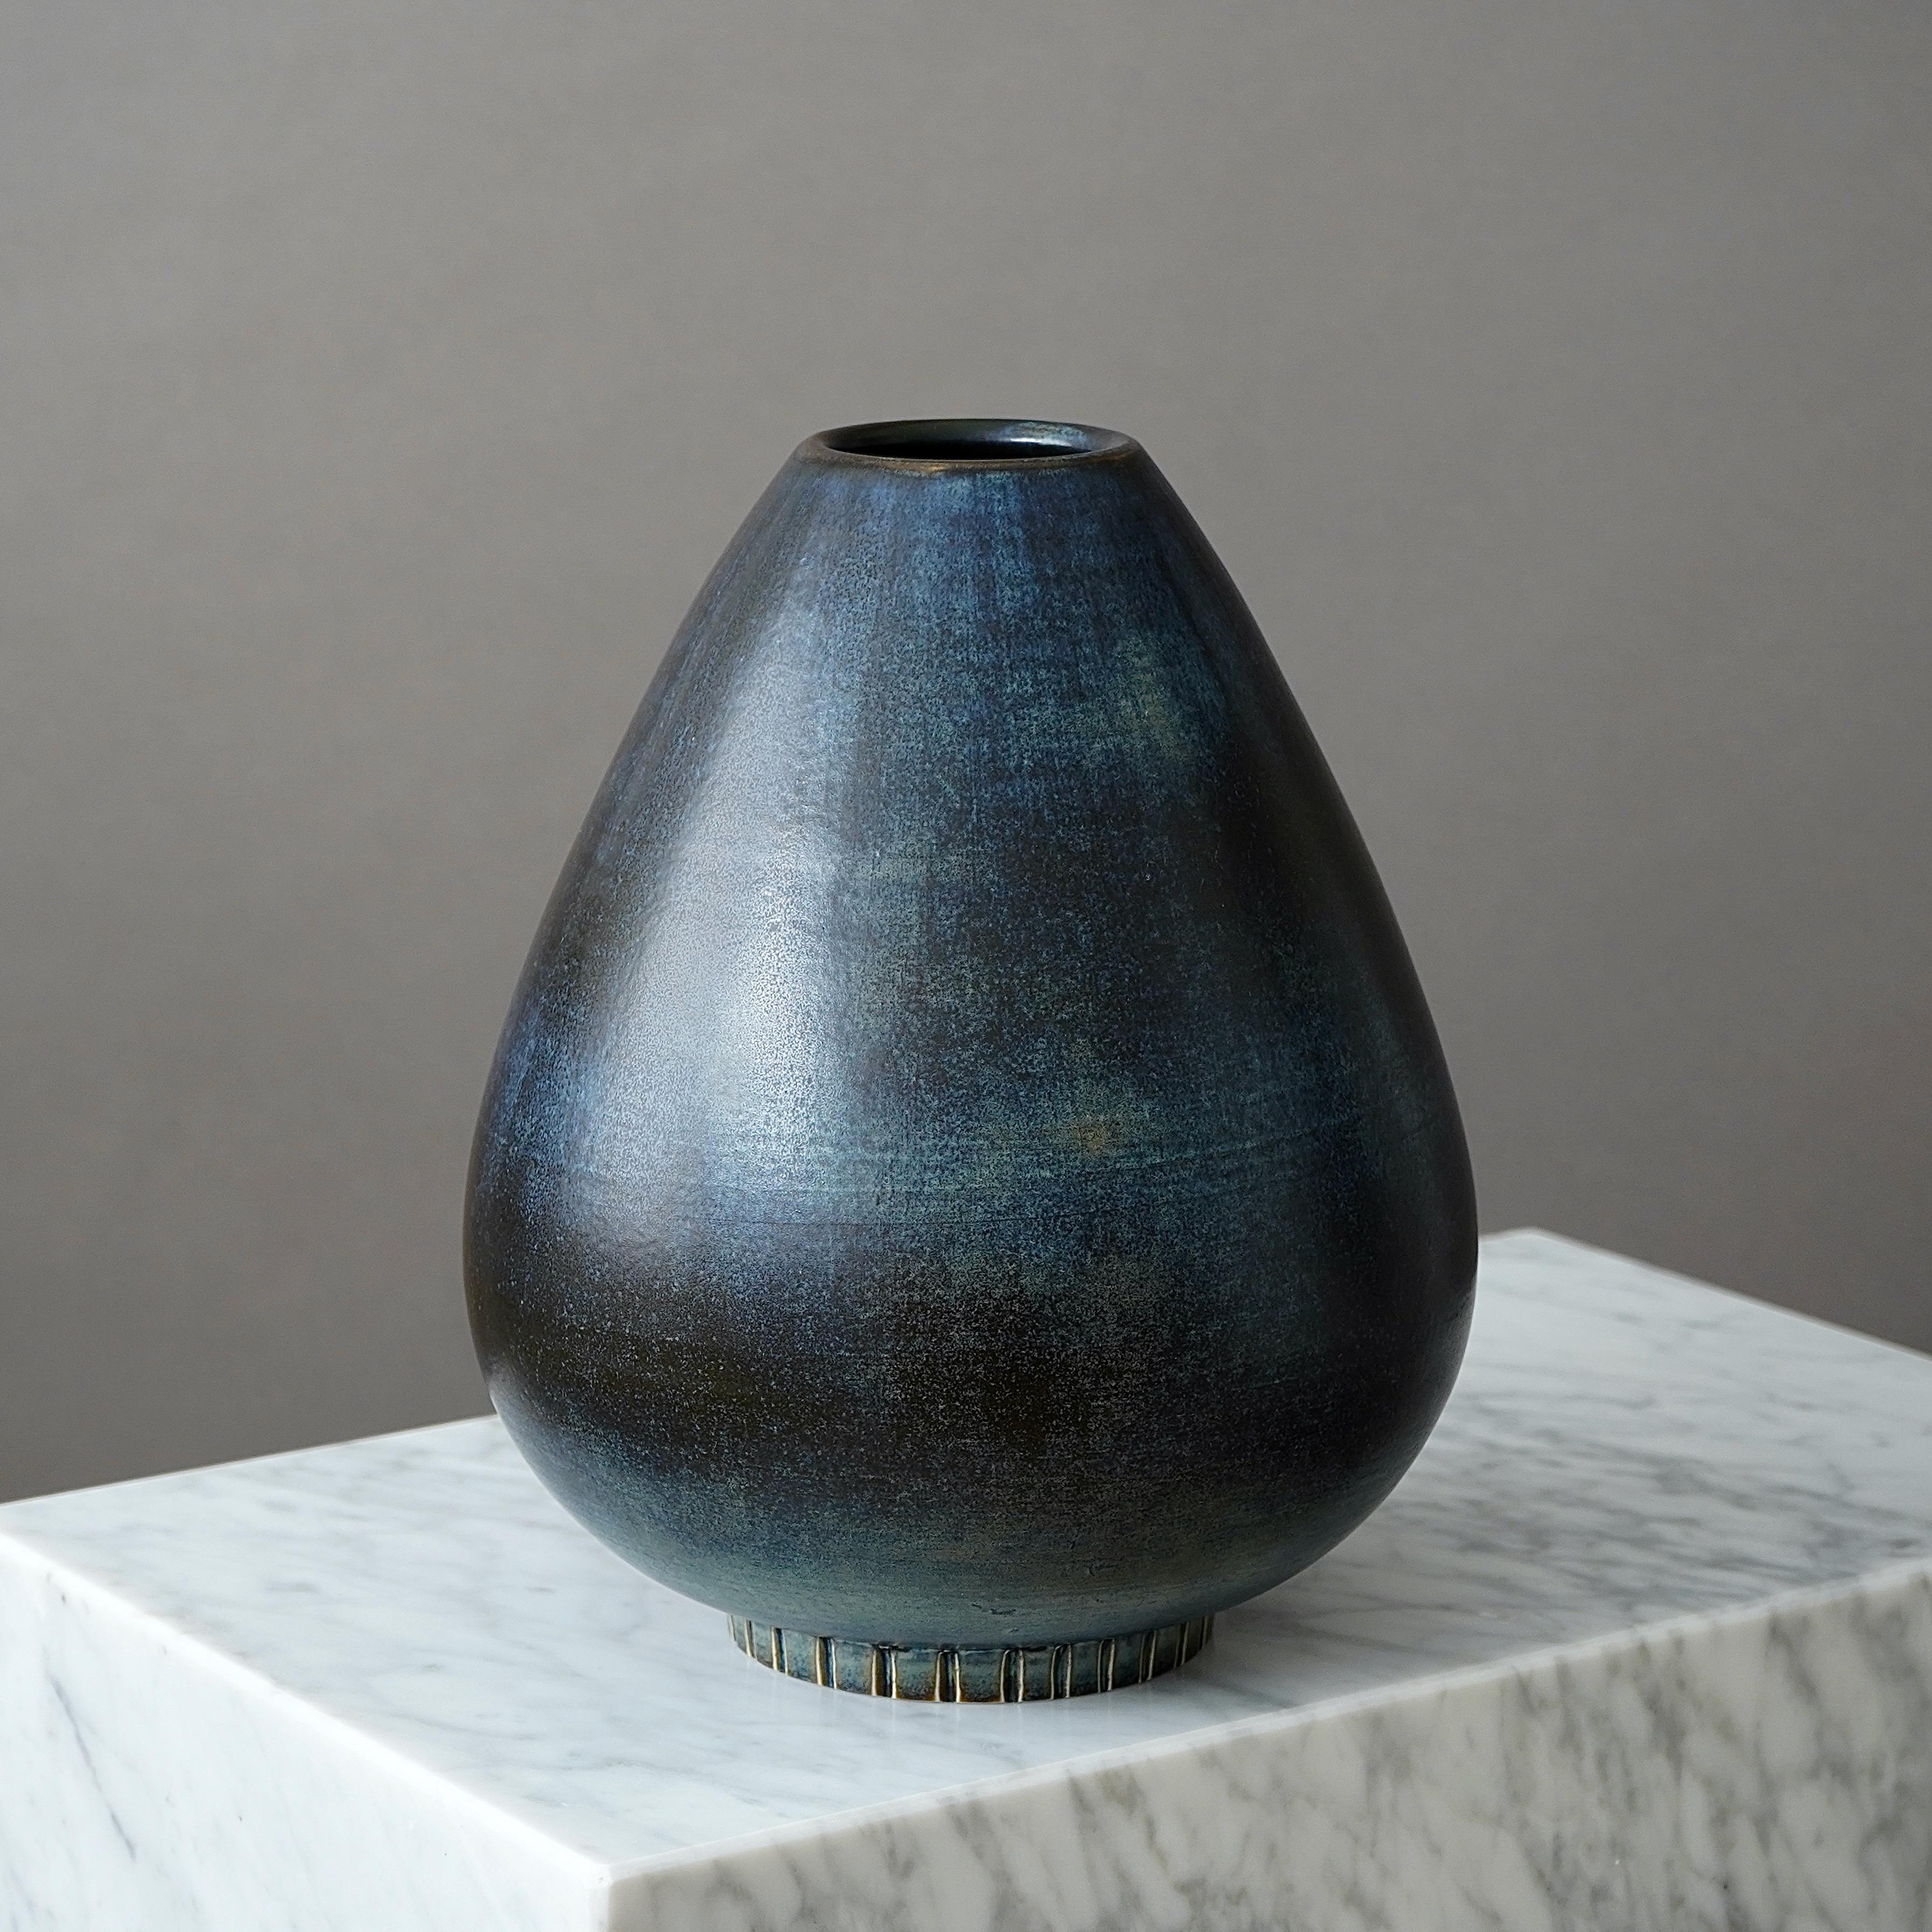 Eine große und schöne Vase aus Steingut mit erstaunlicher Glasur. 
Entworfen von Gunnar Nylund für Rorstrand, Schweden, 1940er Jahre.  

Ausgezeichneter Zustand. Eingeschnittene Signatur 